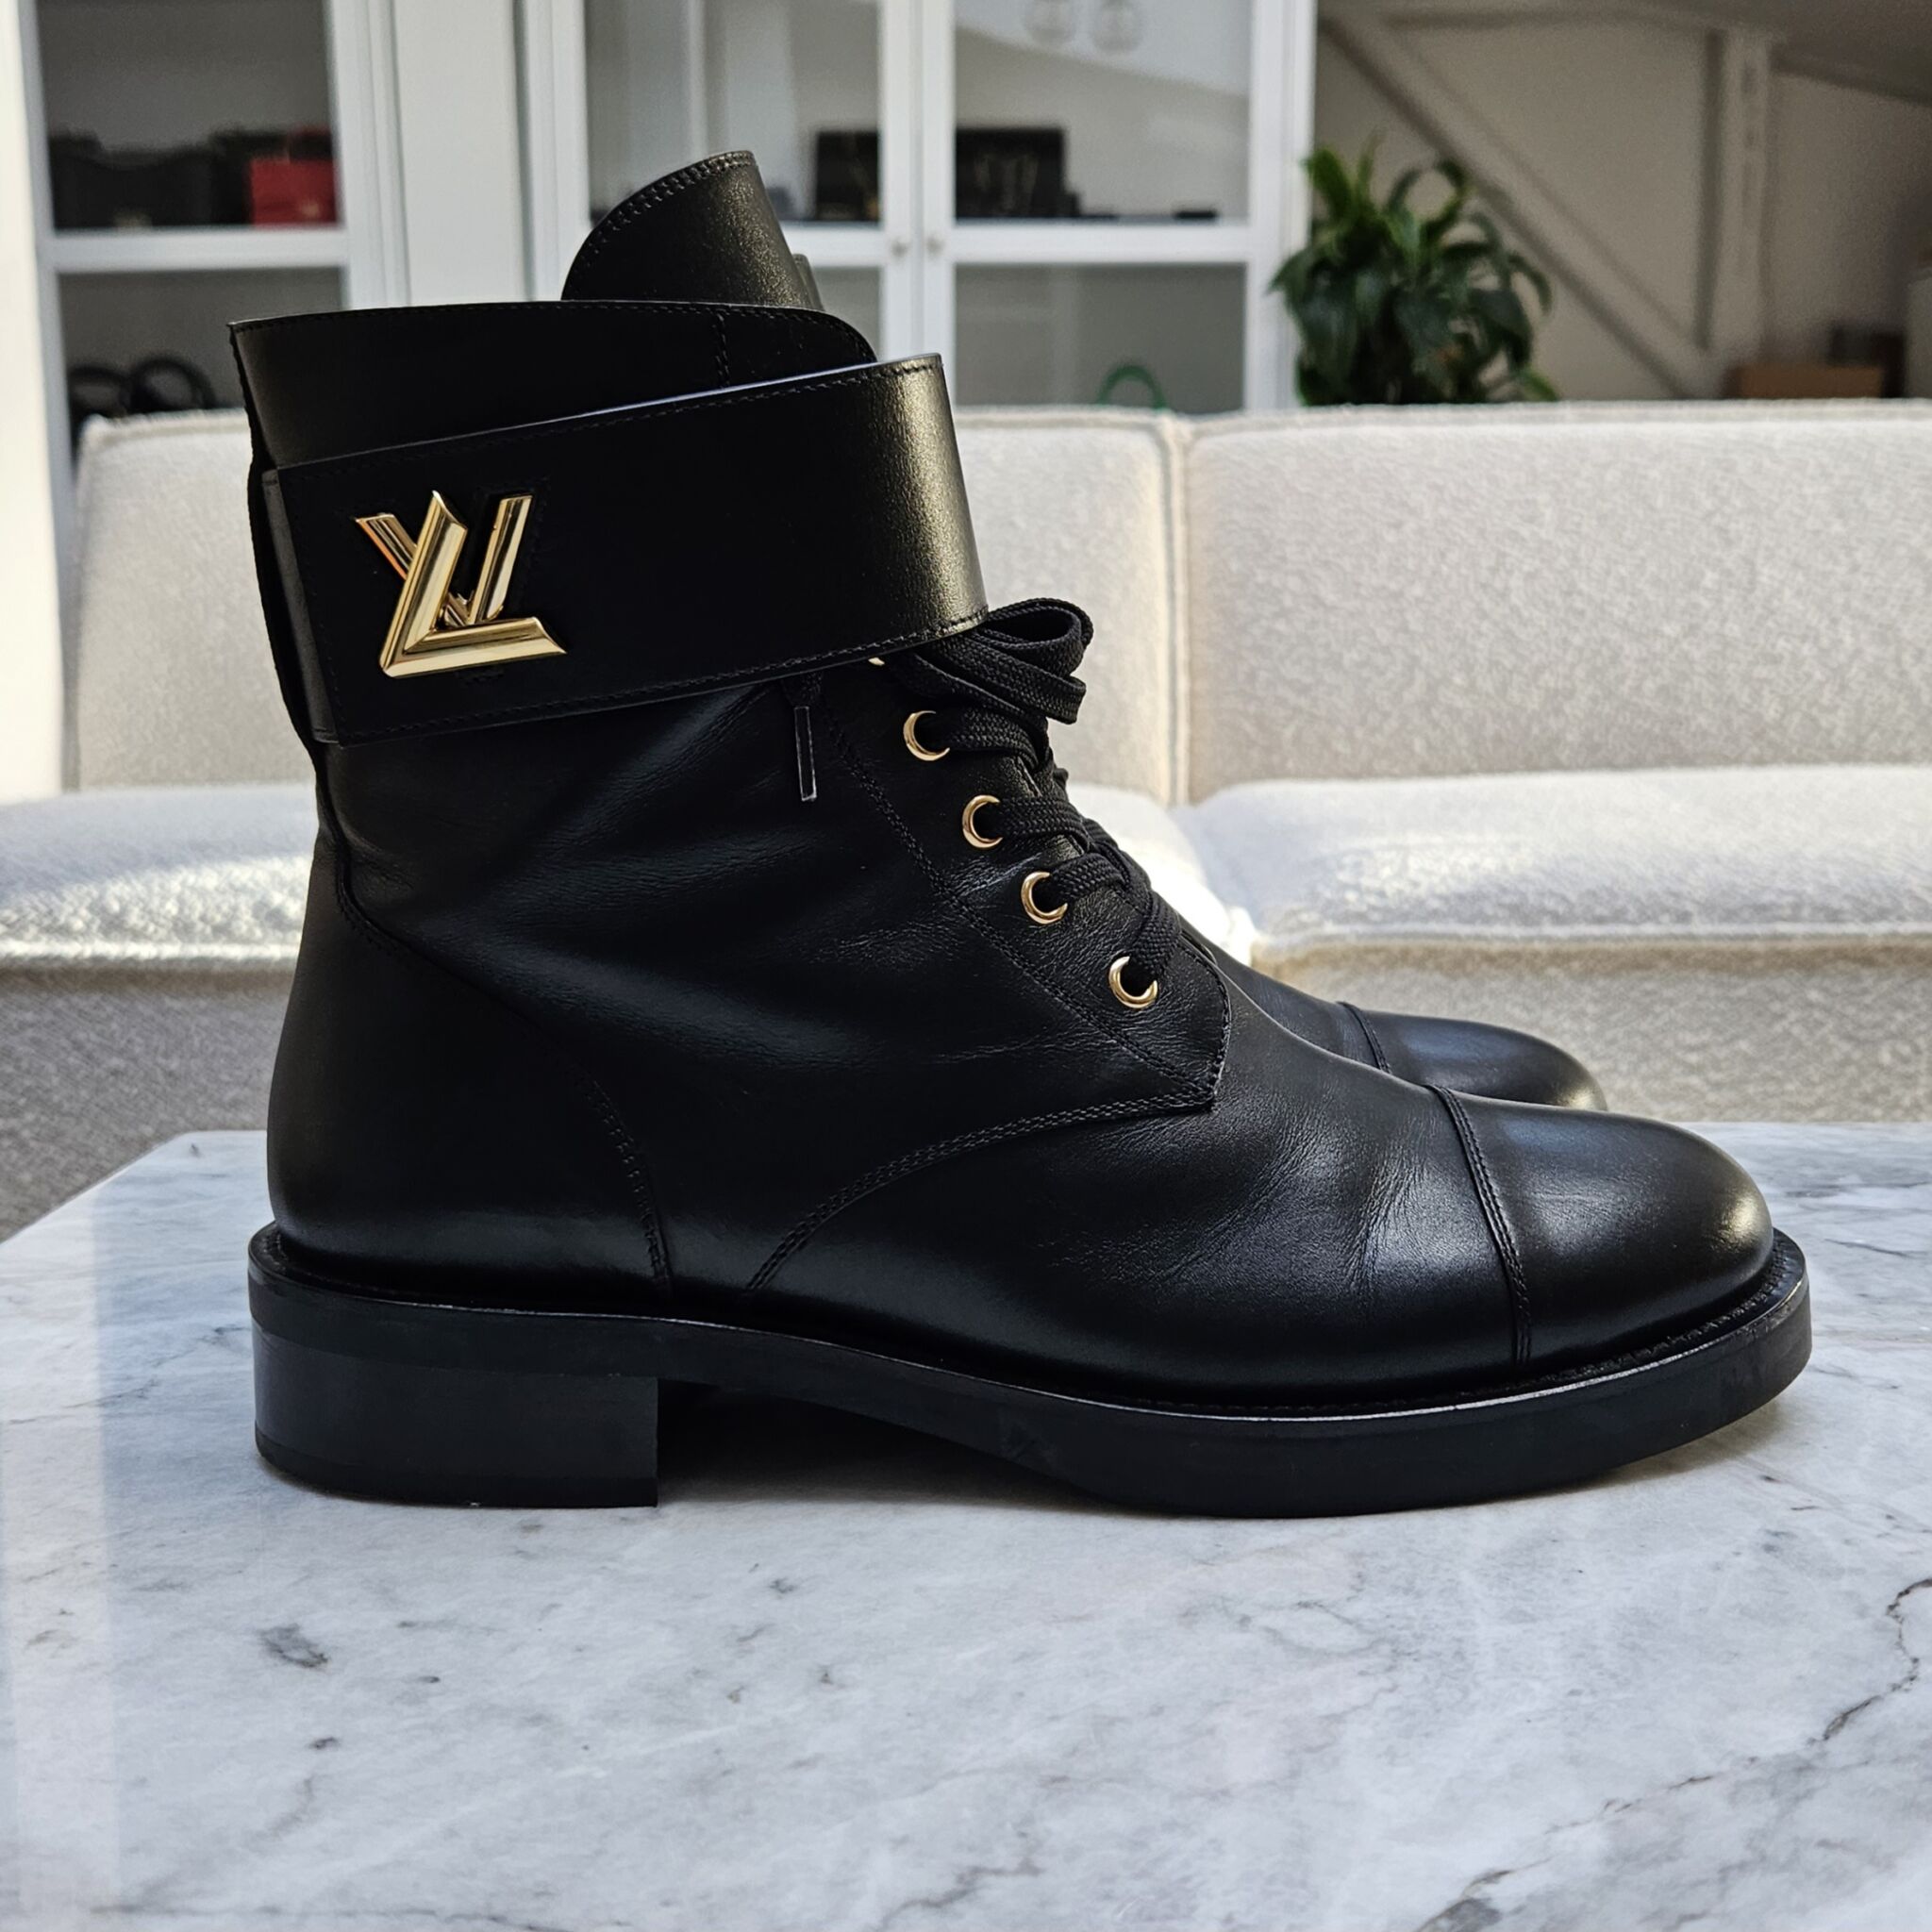 Louis Vuitton Wonderland Lace Up Boots